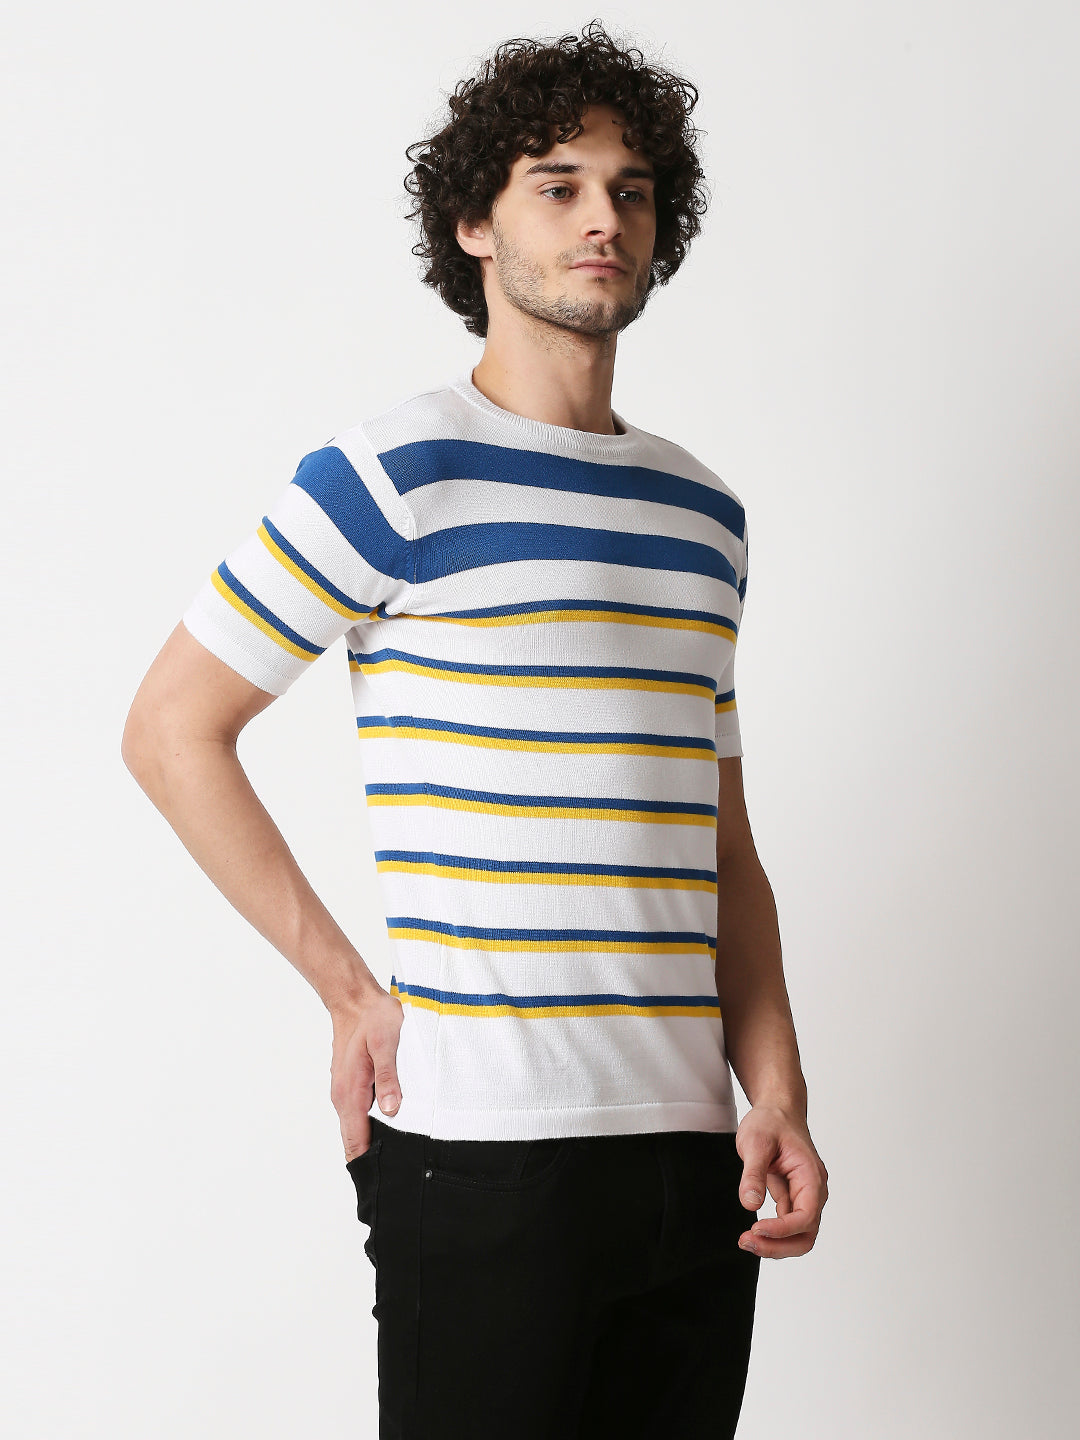 Buy Men's Blue, Yellow & White Strips Flat knit Slim Fit T-shirt